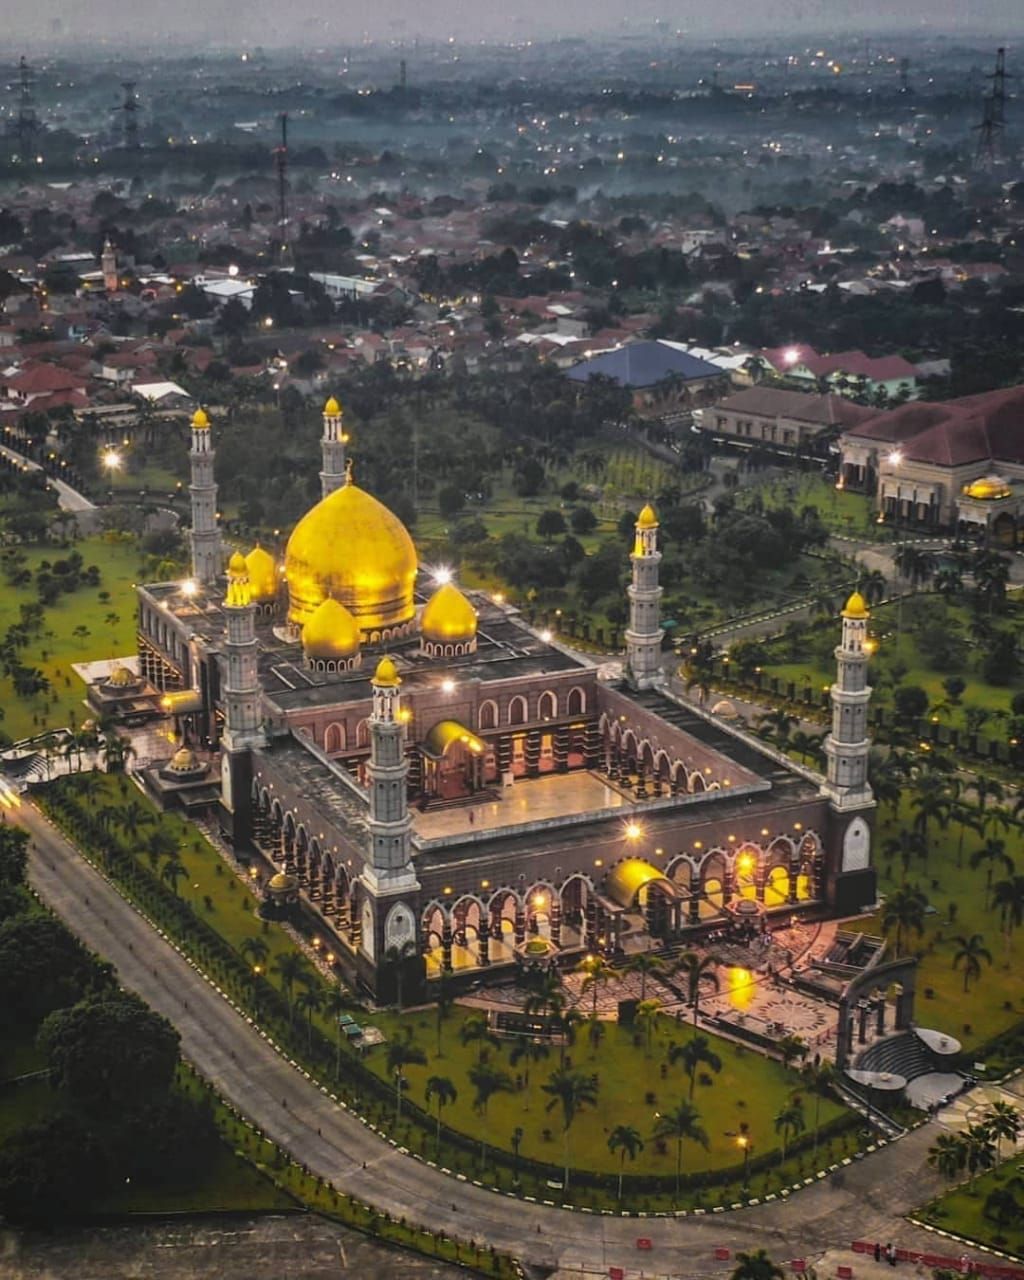 Tampilan Masjid Kubah Emas jika dilihat dari atas